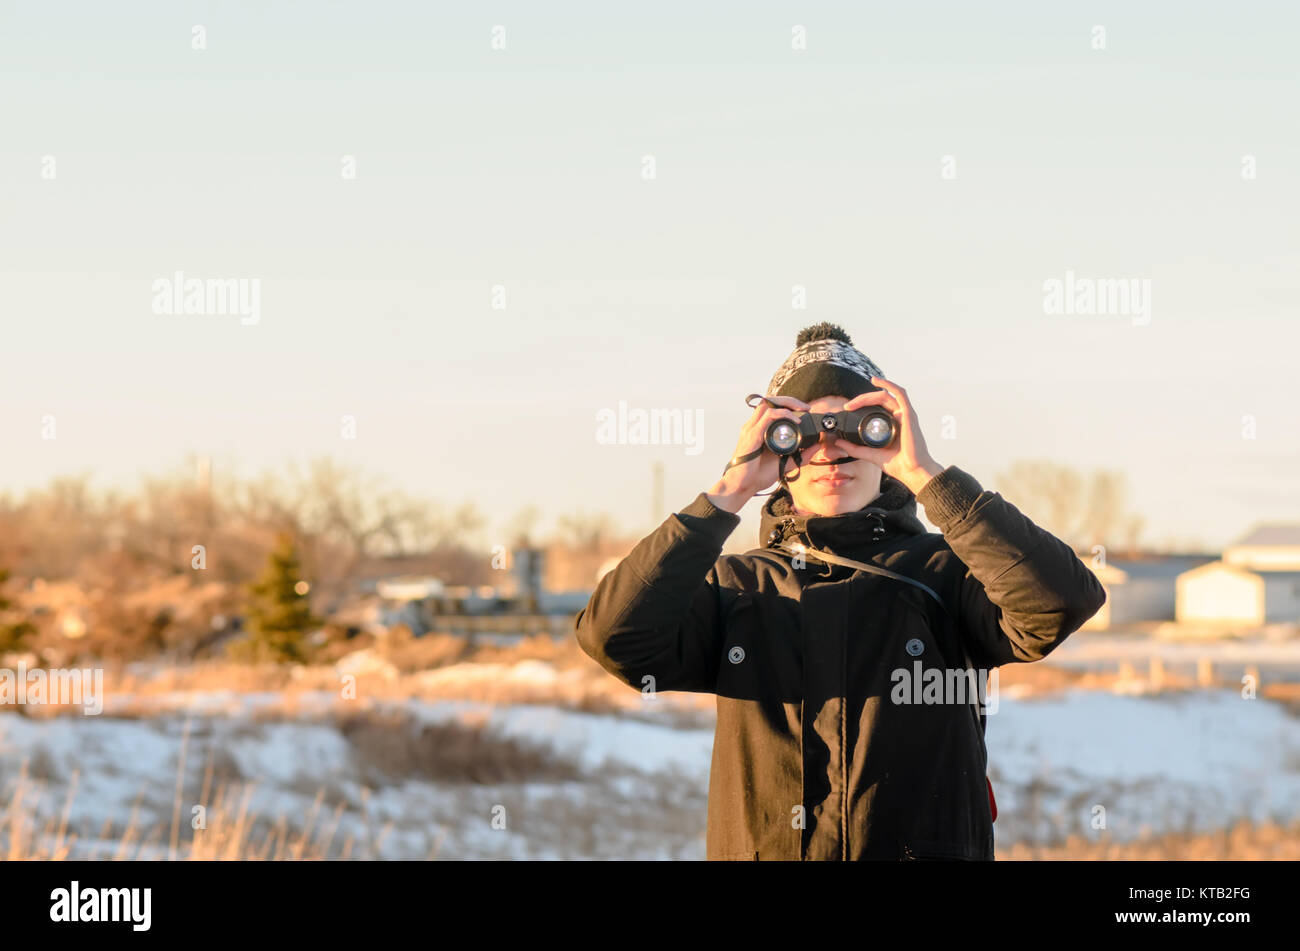 Im Vordergrund, ein junger Kerl in einer schwarzen Jacke sieht durch ein Fernglas, im Hintergrund weißer Schnee, gelb Gras und Büschen, über dem Hellblau Stockfoto